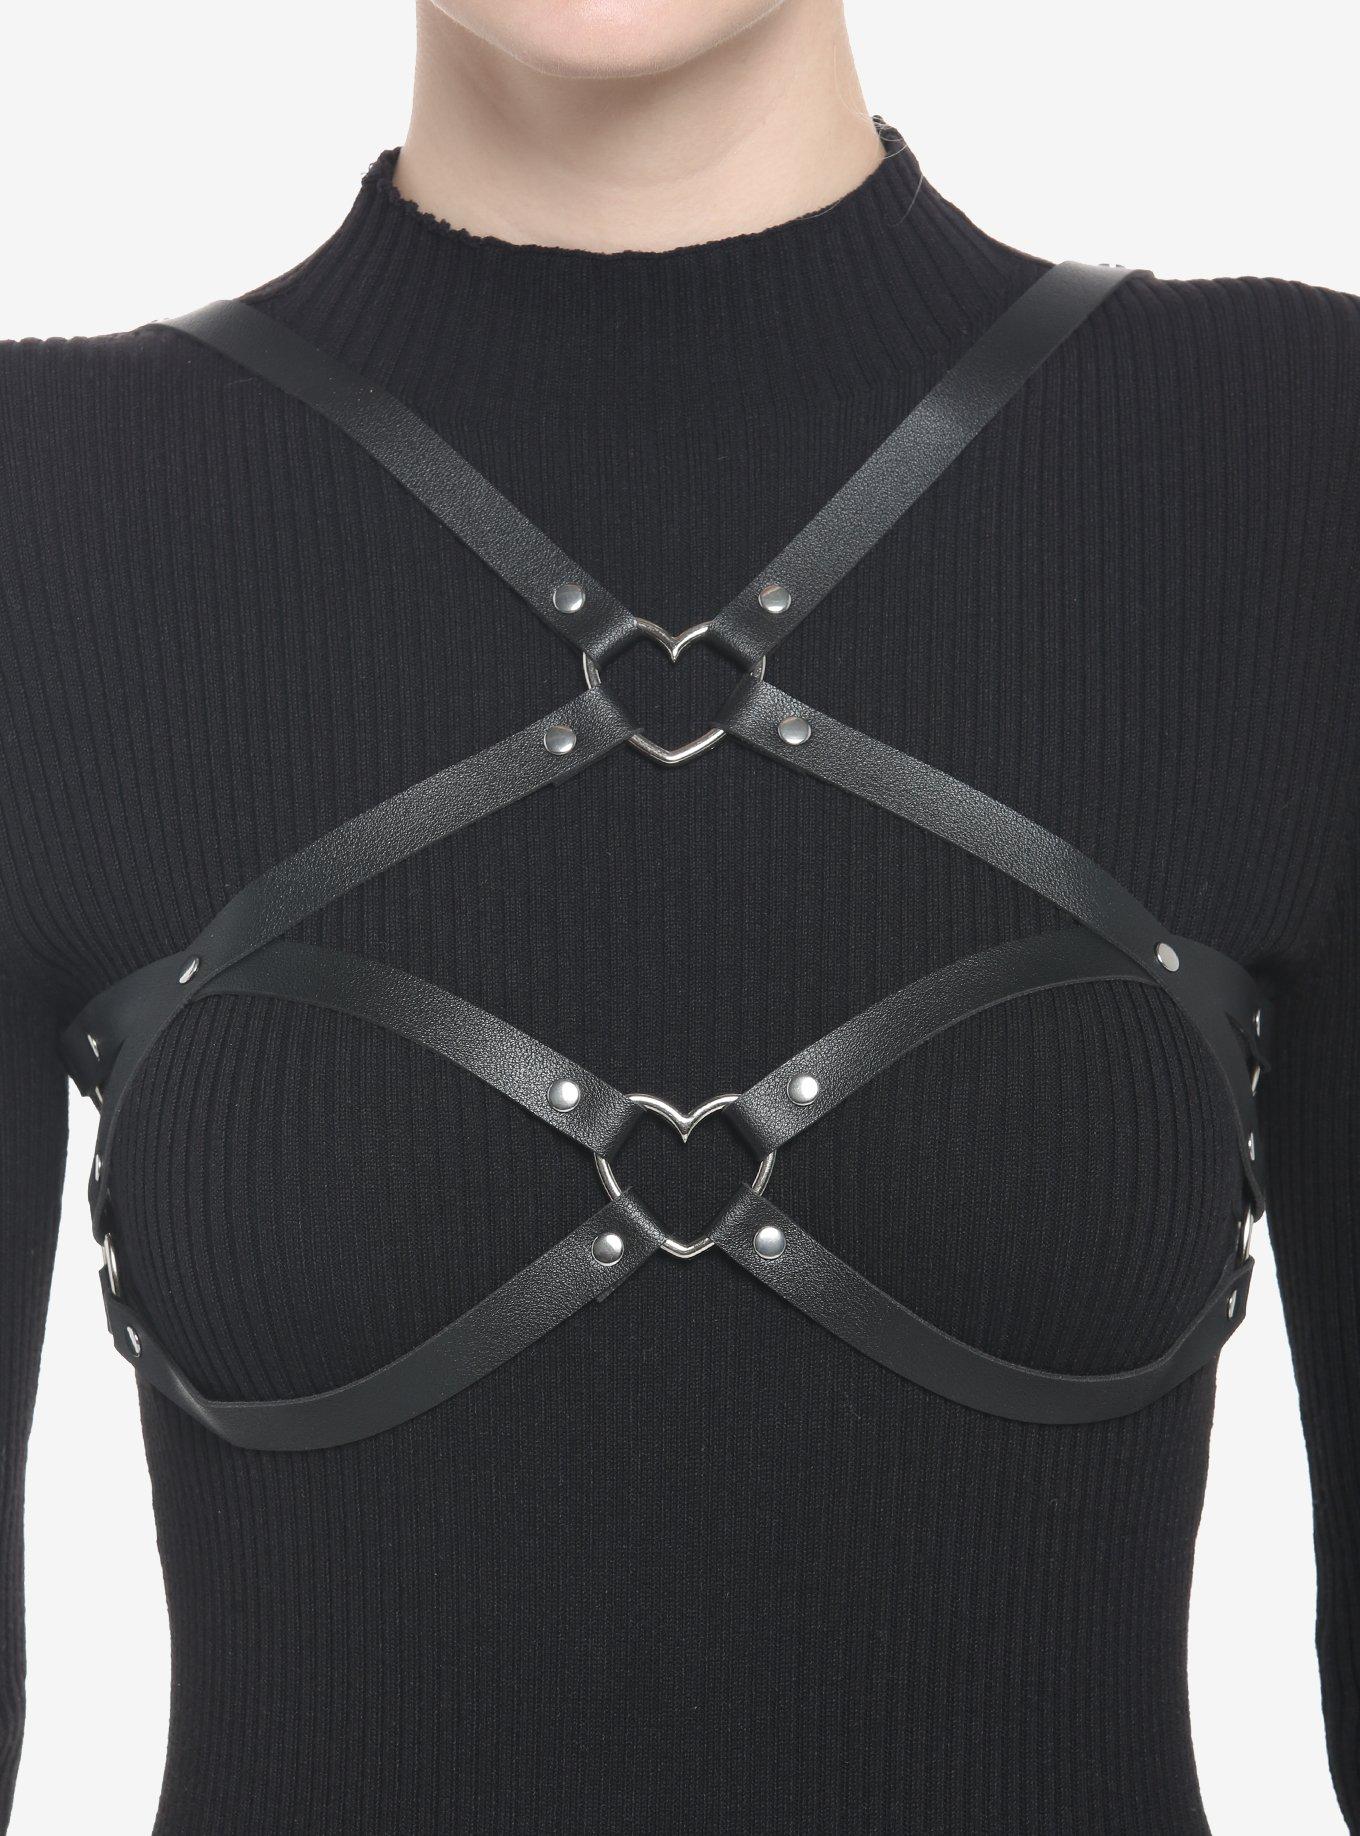 Black Faux Leather Heart Bra Harness